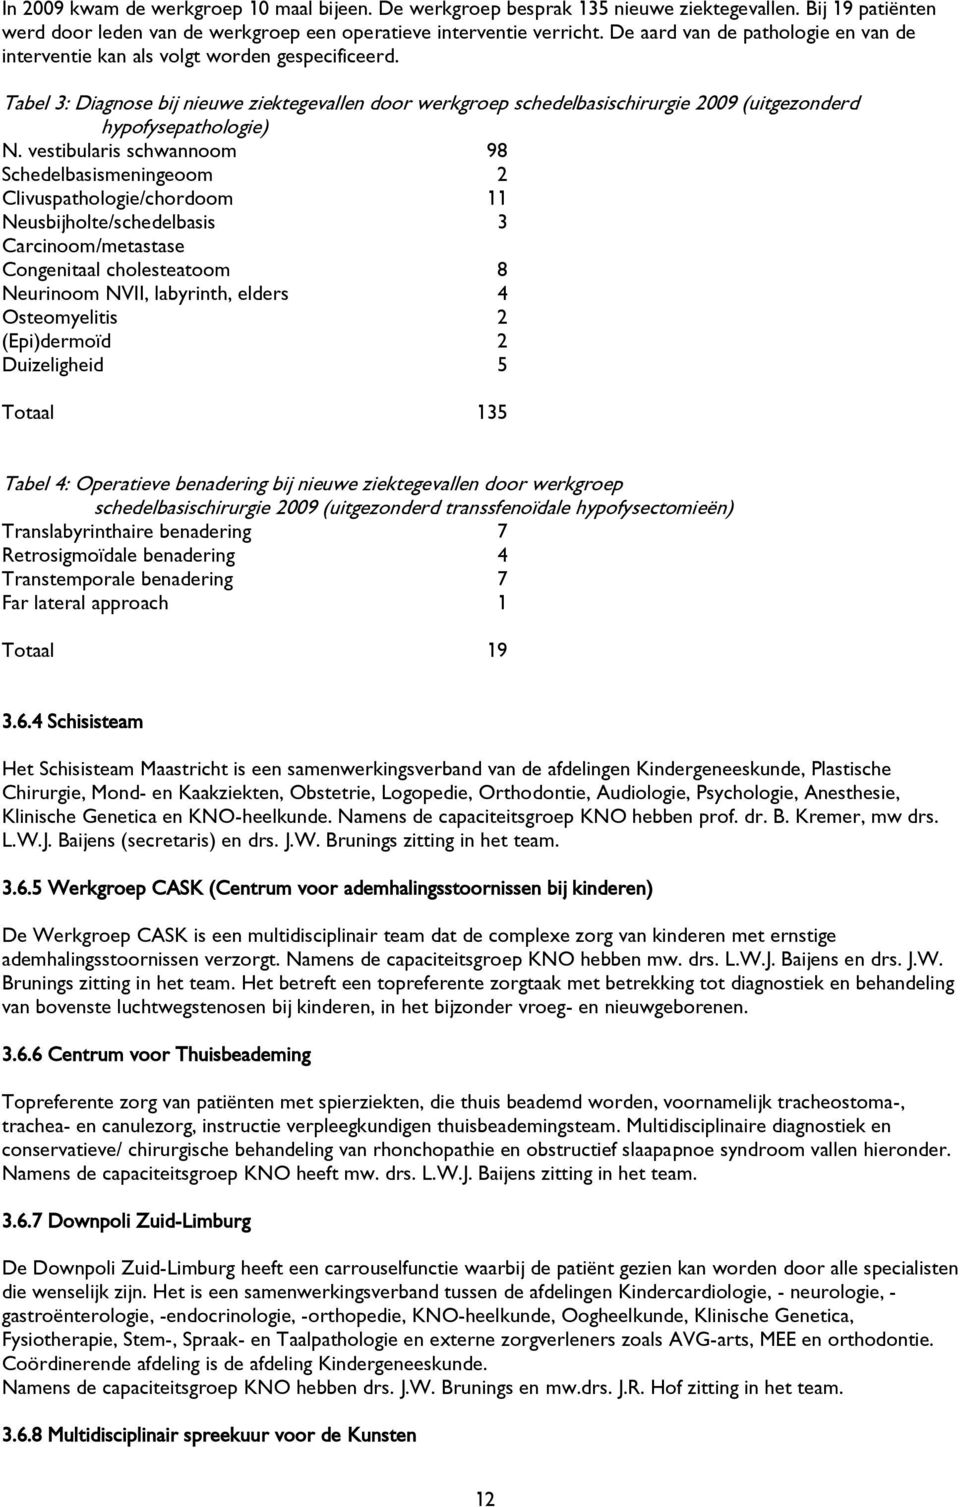 Tabel 3: Diagnose bij nieuwe ziektegevallen door werkgroep schedelbasischirurgie 2009 (uitgezonderd hypofysepathologie) N.